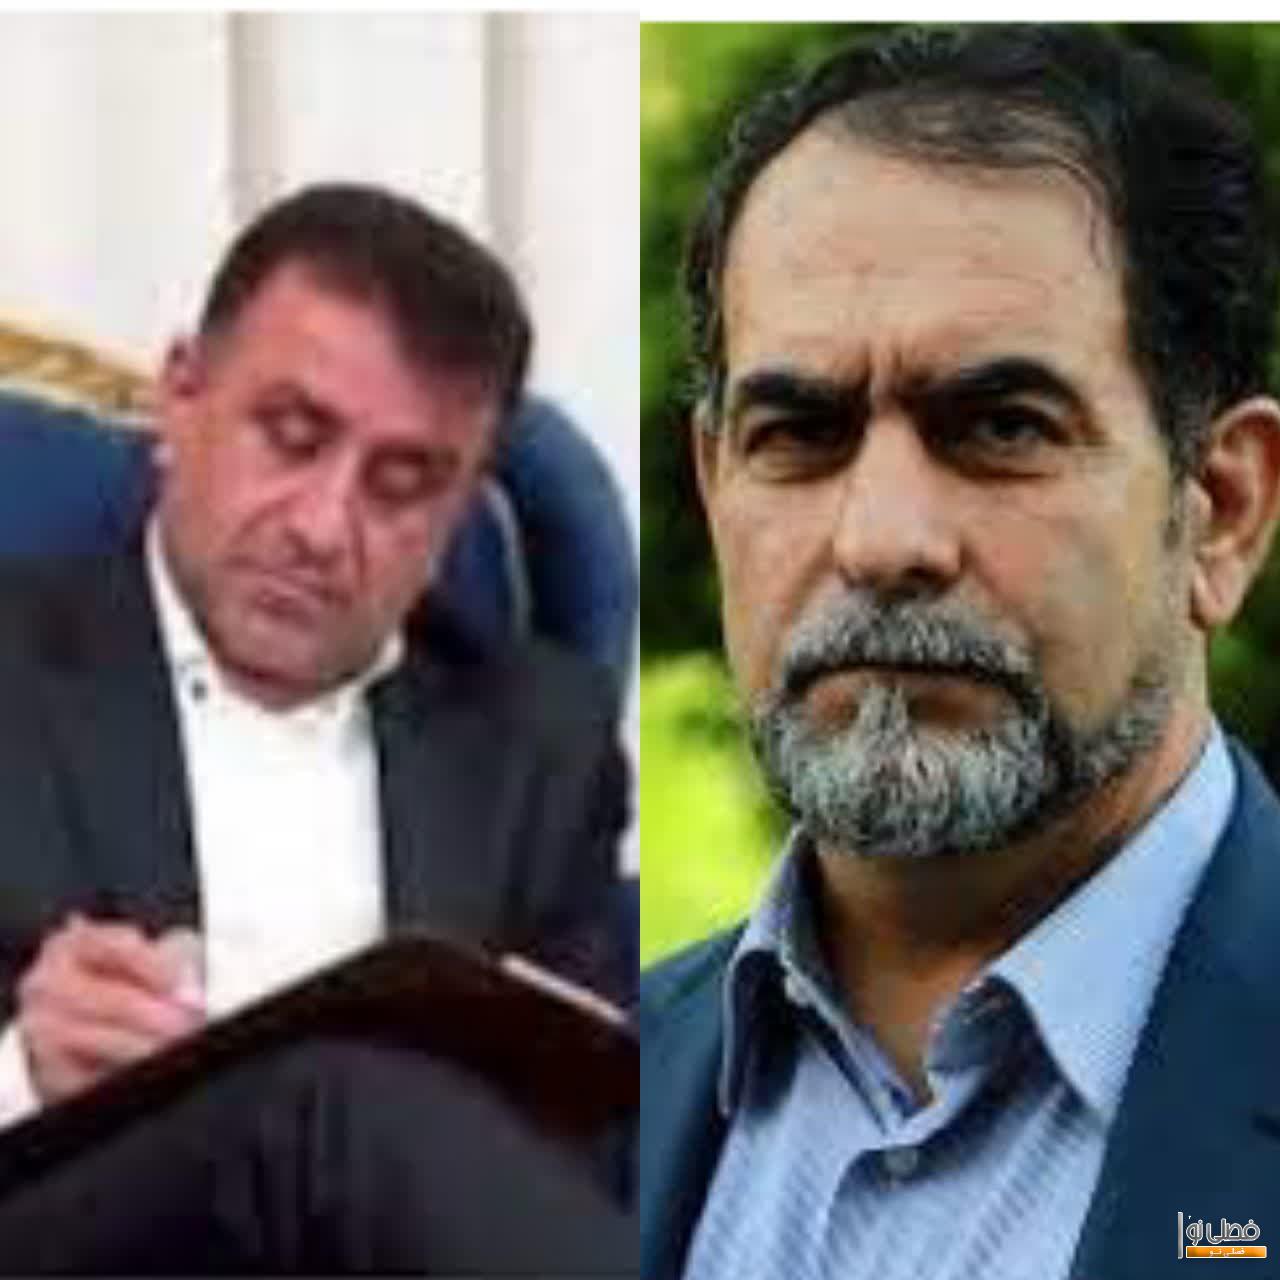 احترام متقابل سید باقر موسوی و دکتر محمد بهرامی ؛ جاودانه ای در اخلاق   ( قلمی بر قامت انسانی و سیاسی سید باقر )